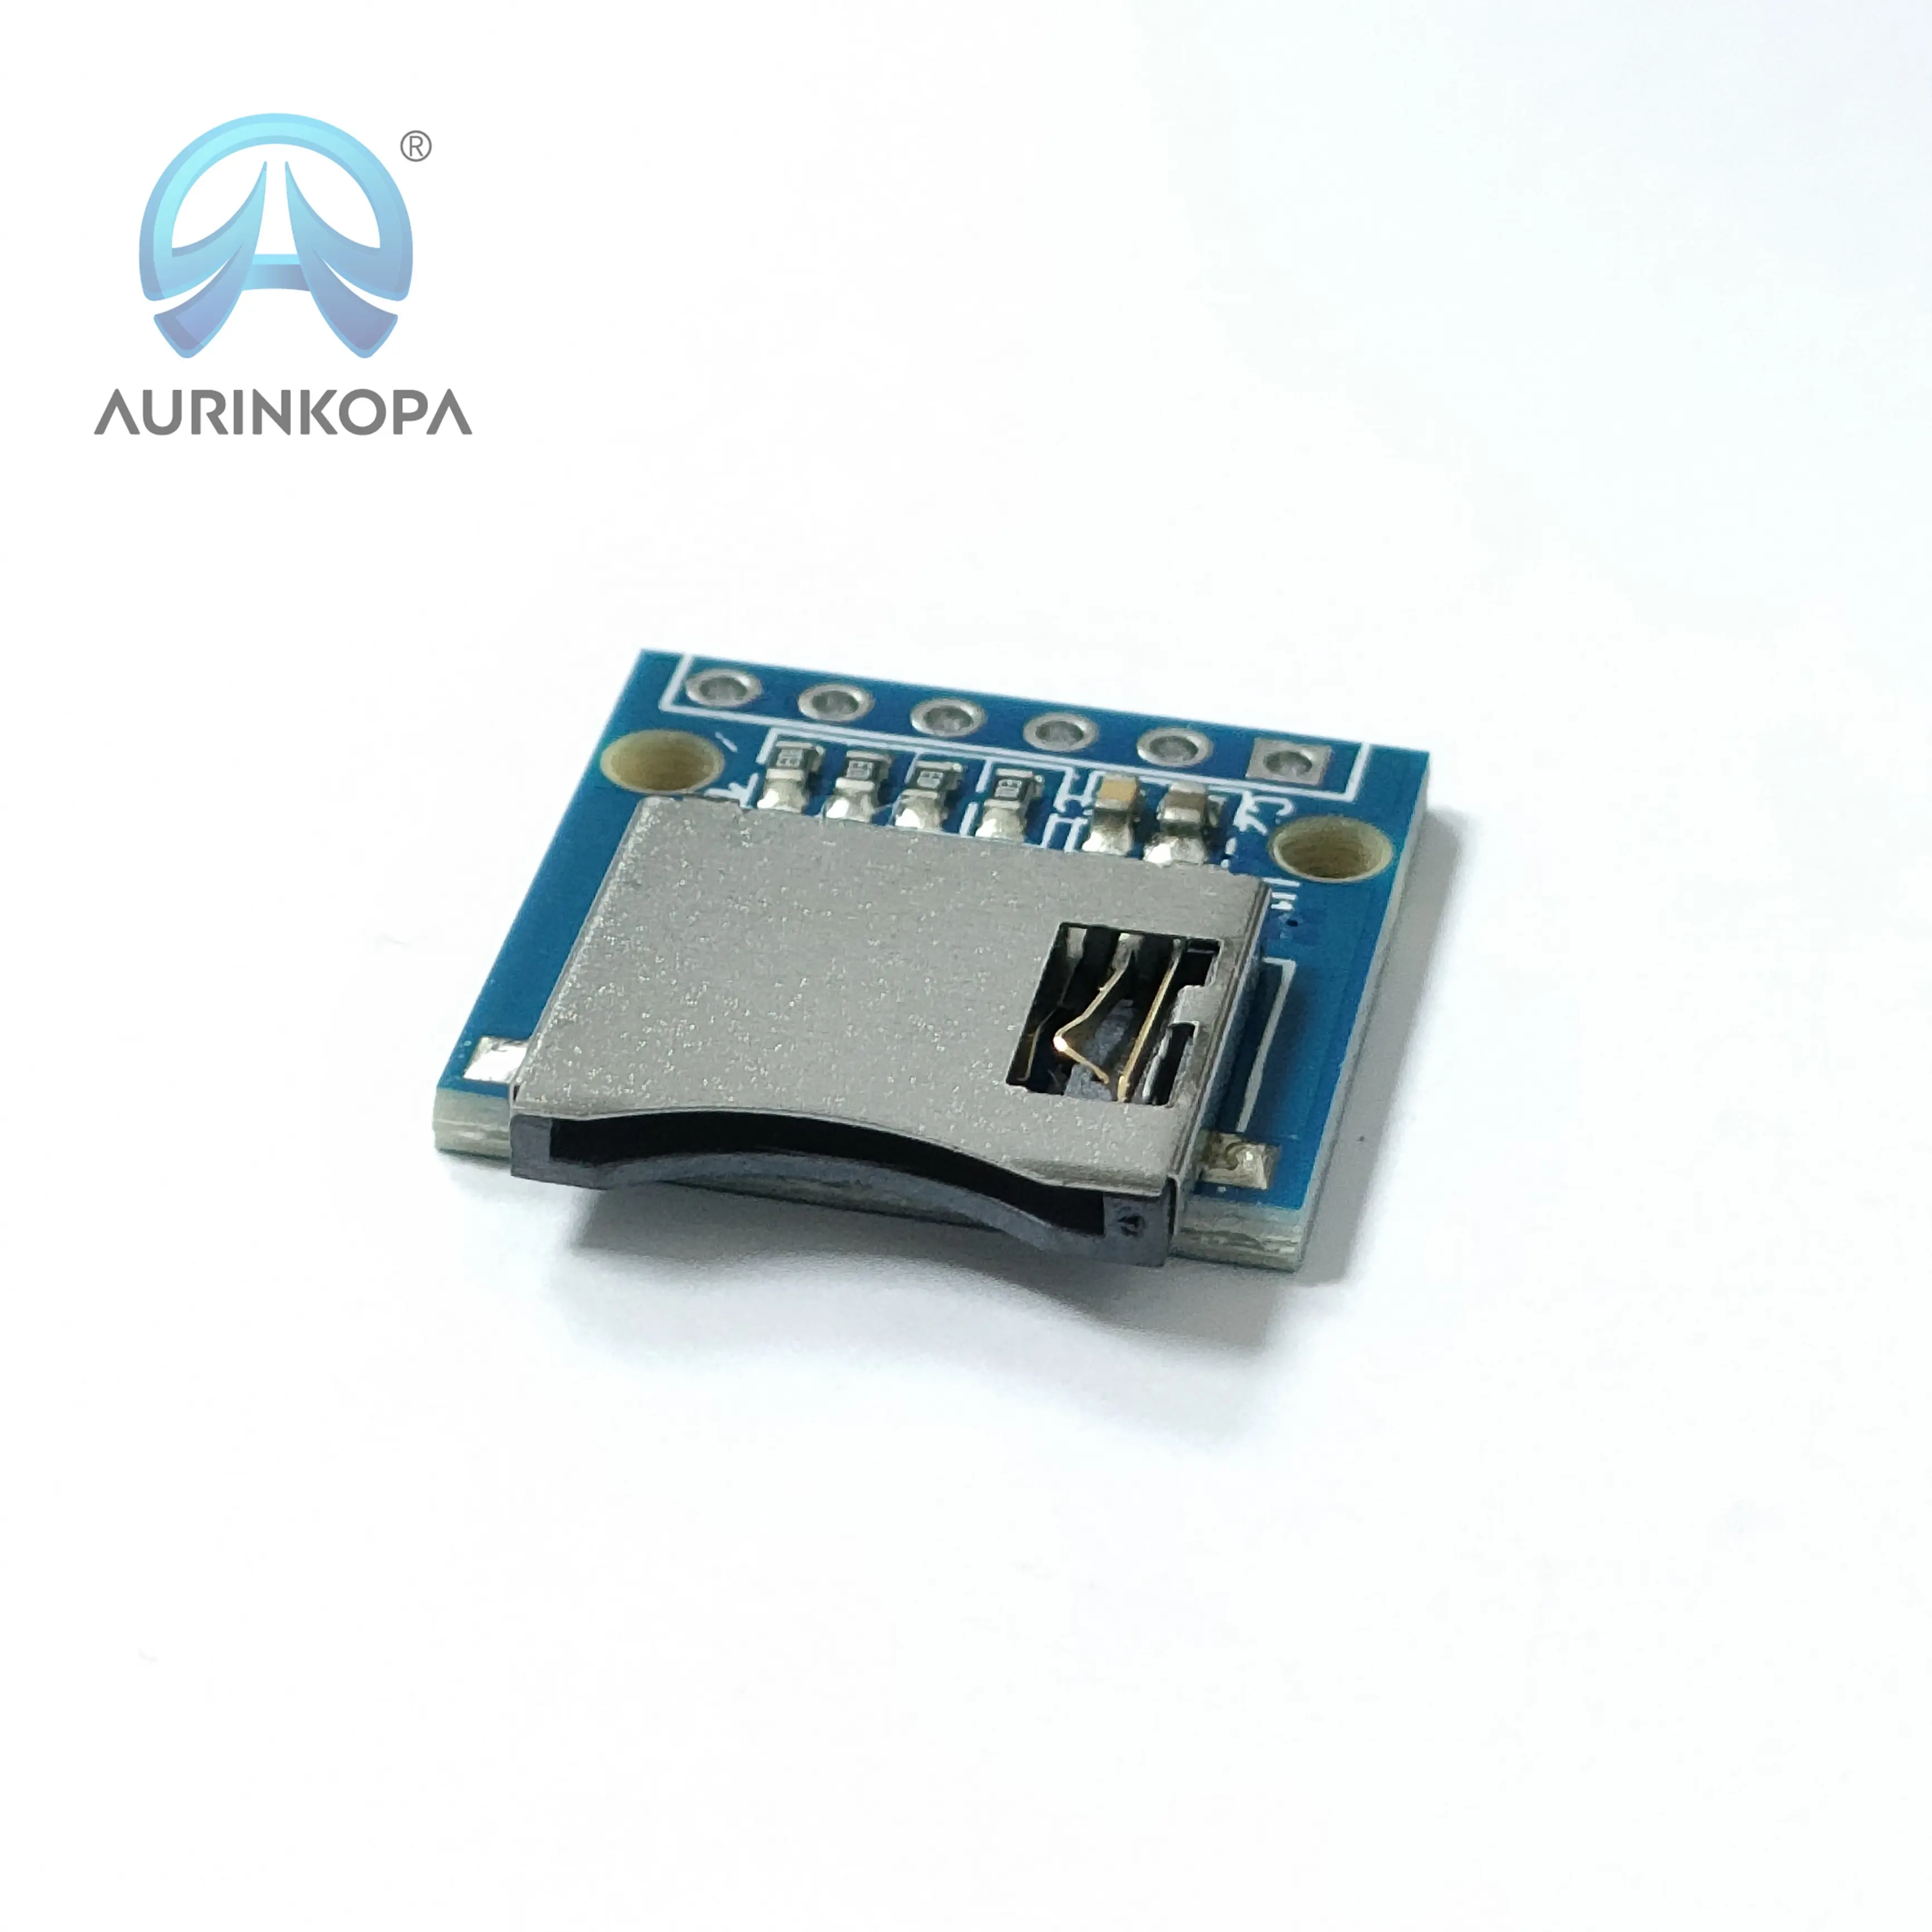 マイクロSDカードモジュールミニTFカードリーダーマイクロSDカードアダプター回路基板